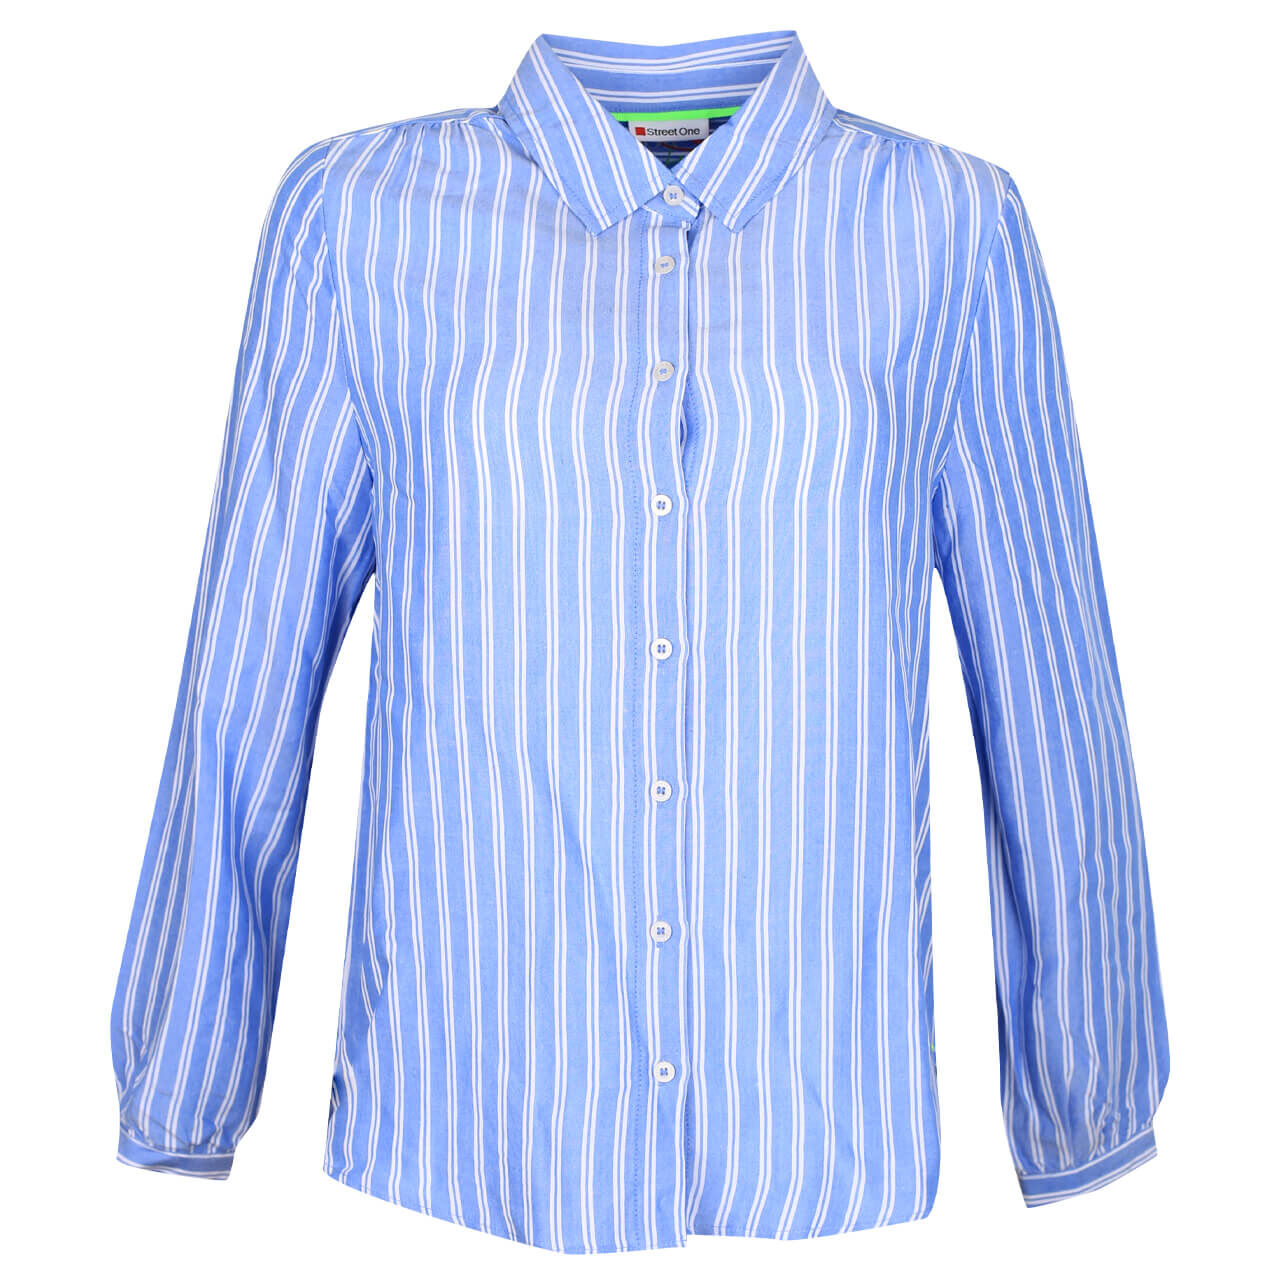 Street One Striped Bluse für Damen in Blau gestreift, FarbNr.: 22289